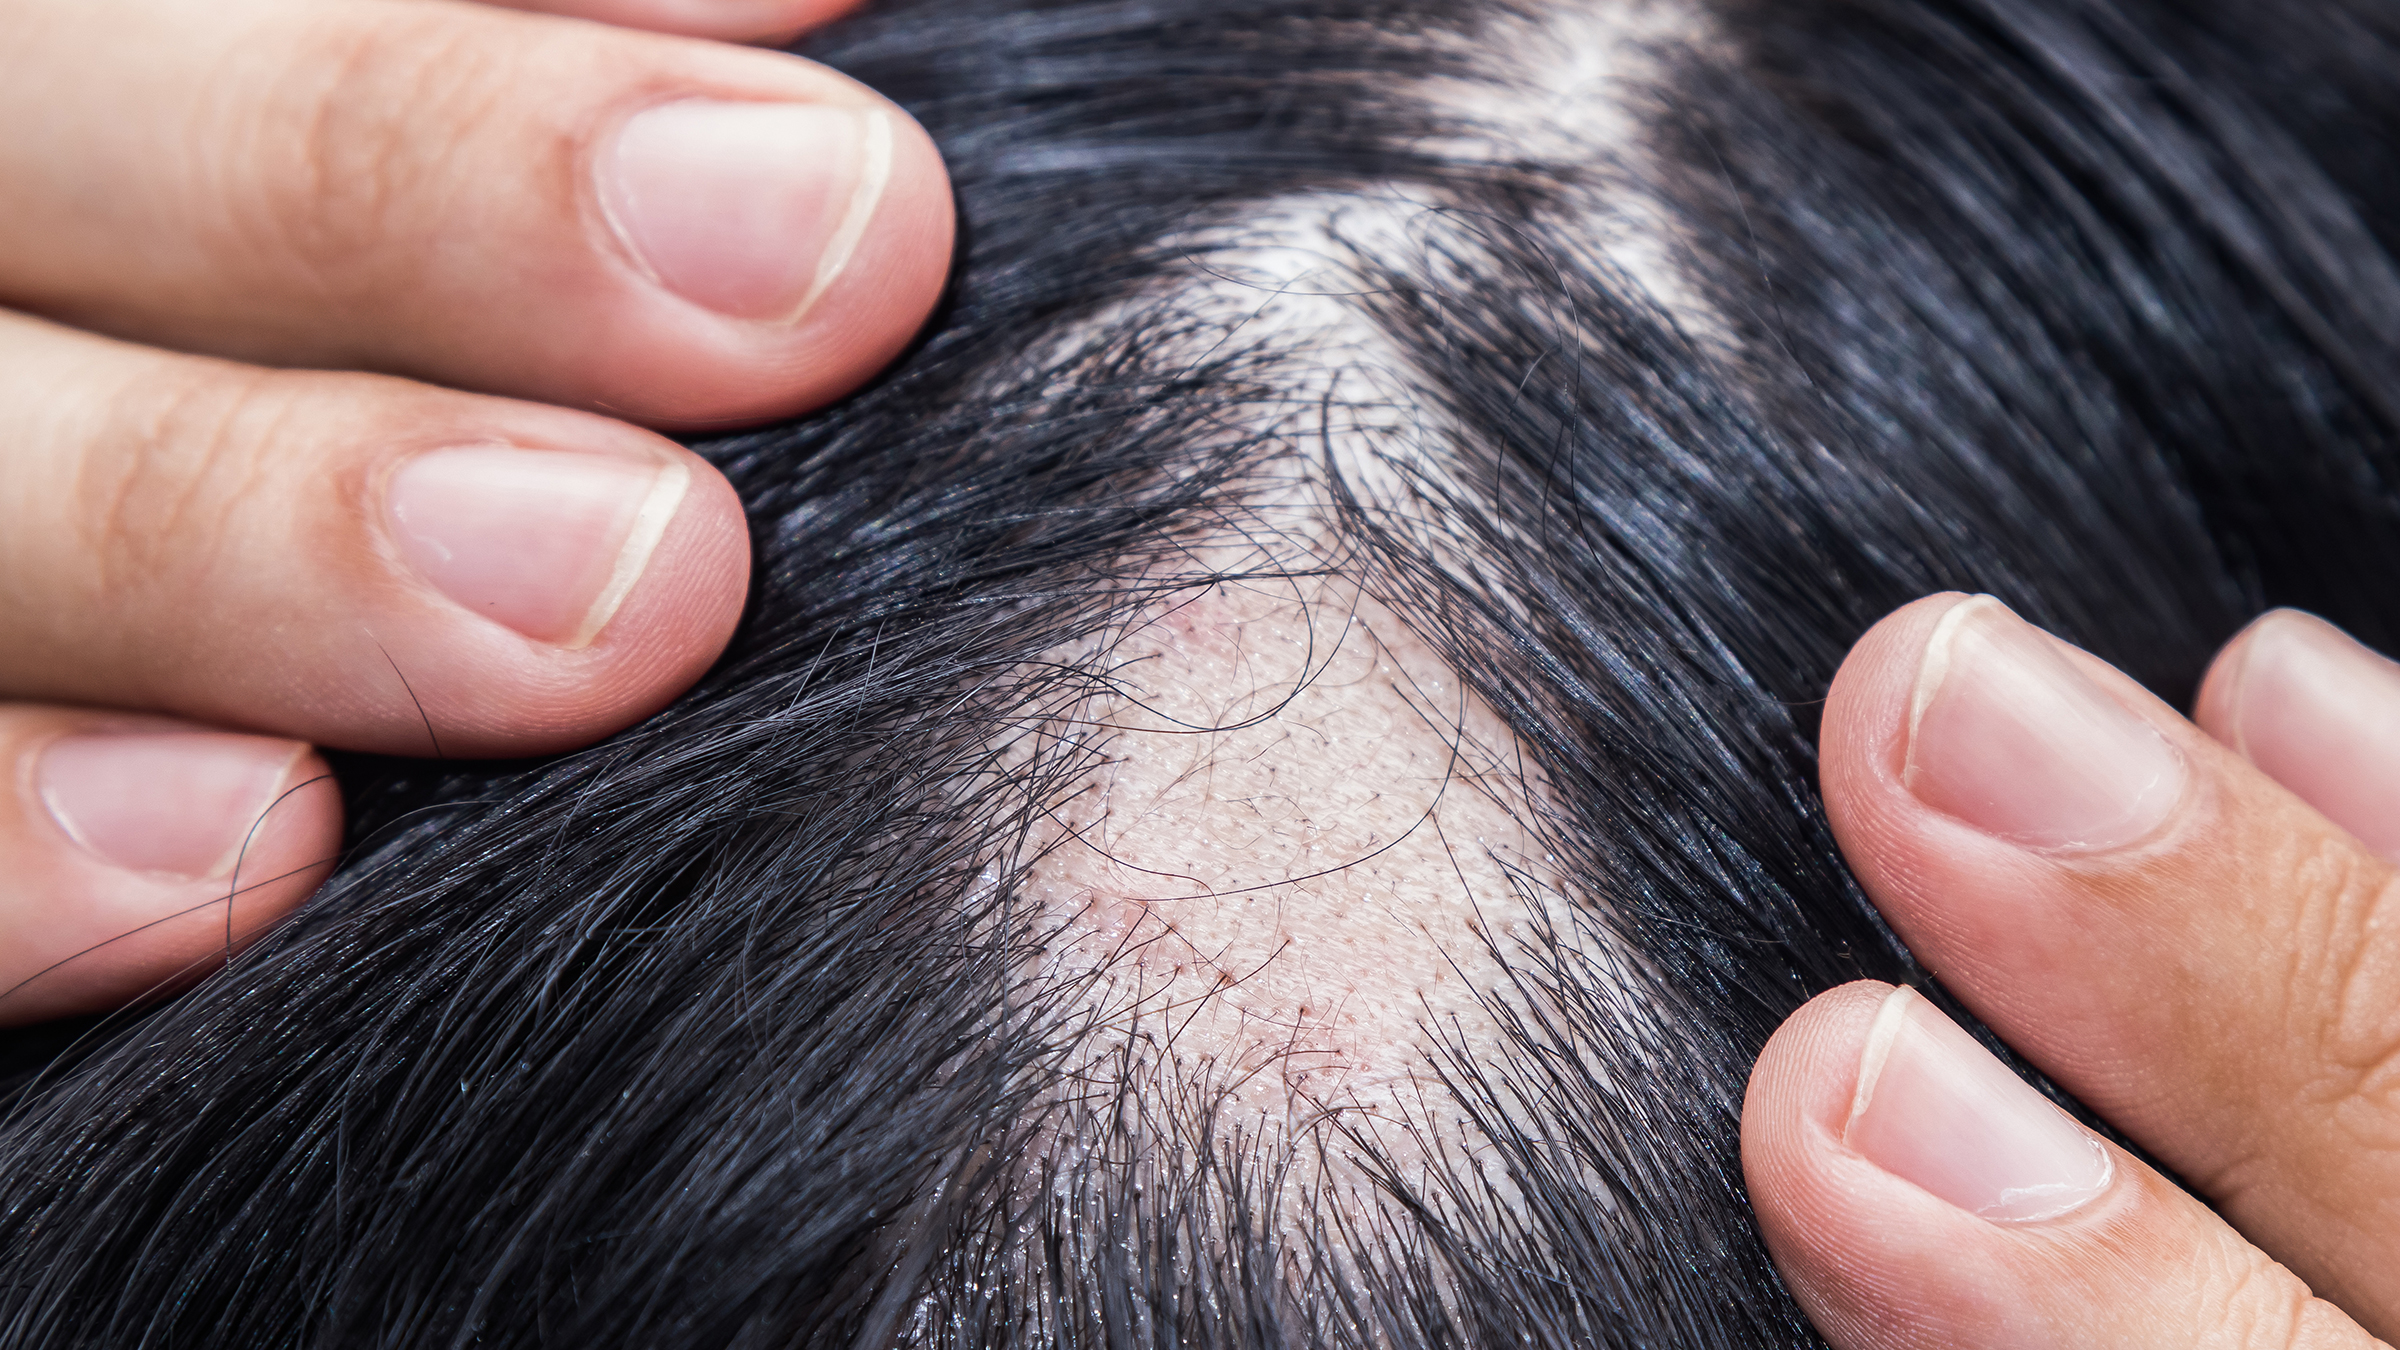 Do Autoimmune Diseases Cause Hair Loss? - GoodRx